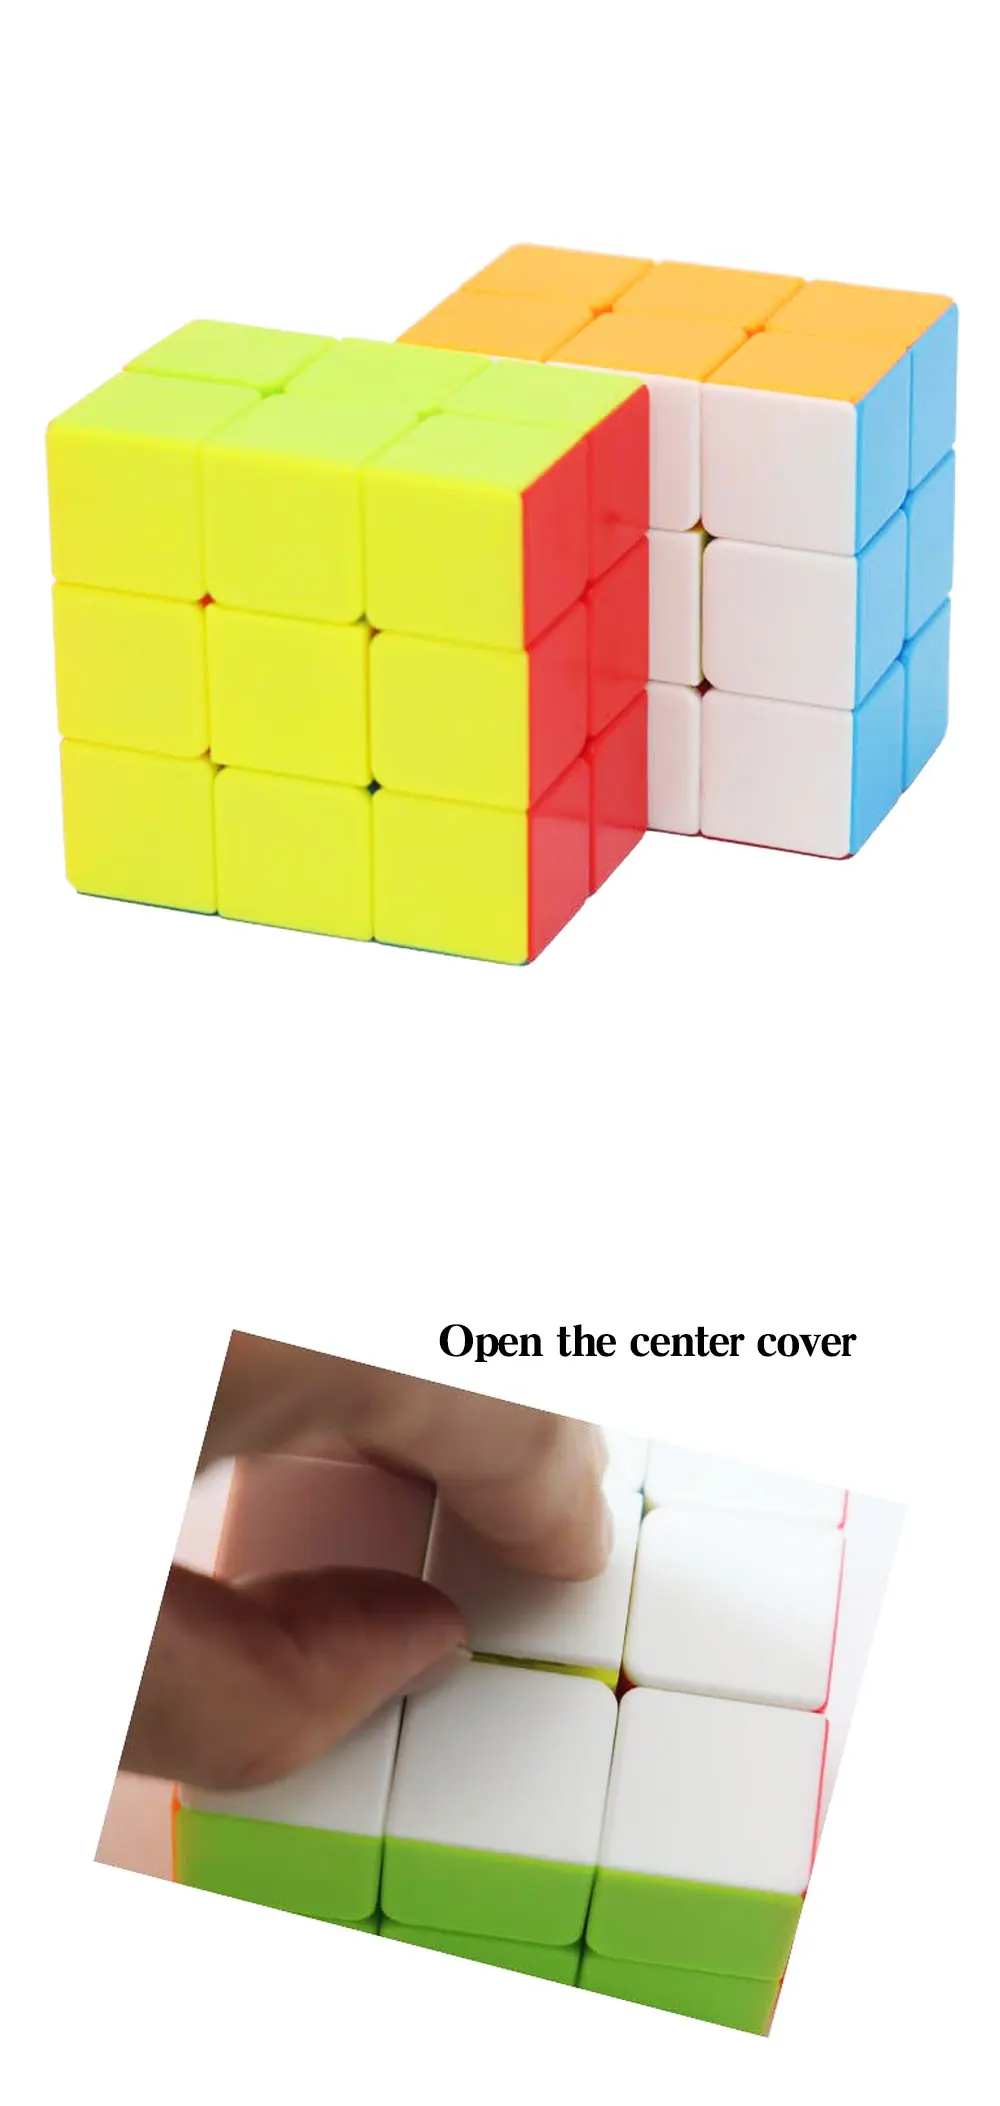 Новый fanxin 2x3x3 скоростной кубик без наклеек гладкие 233 магические кубики профессиональная головоломка куб для детей Cubo magico игрушки